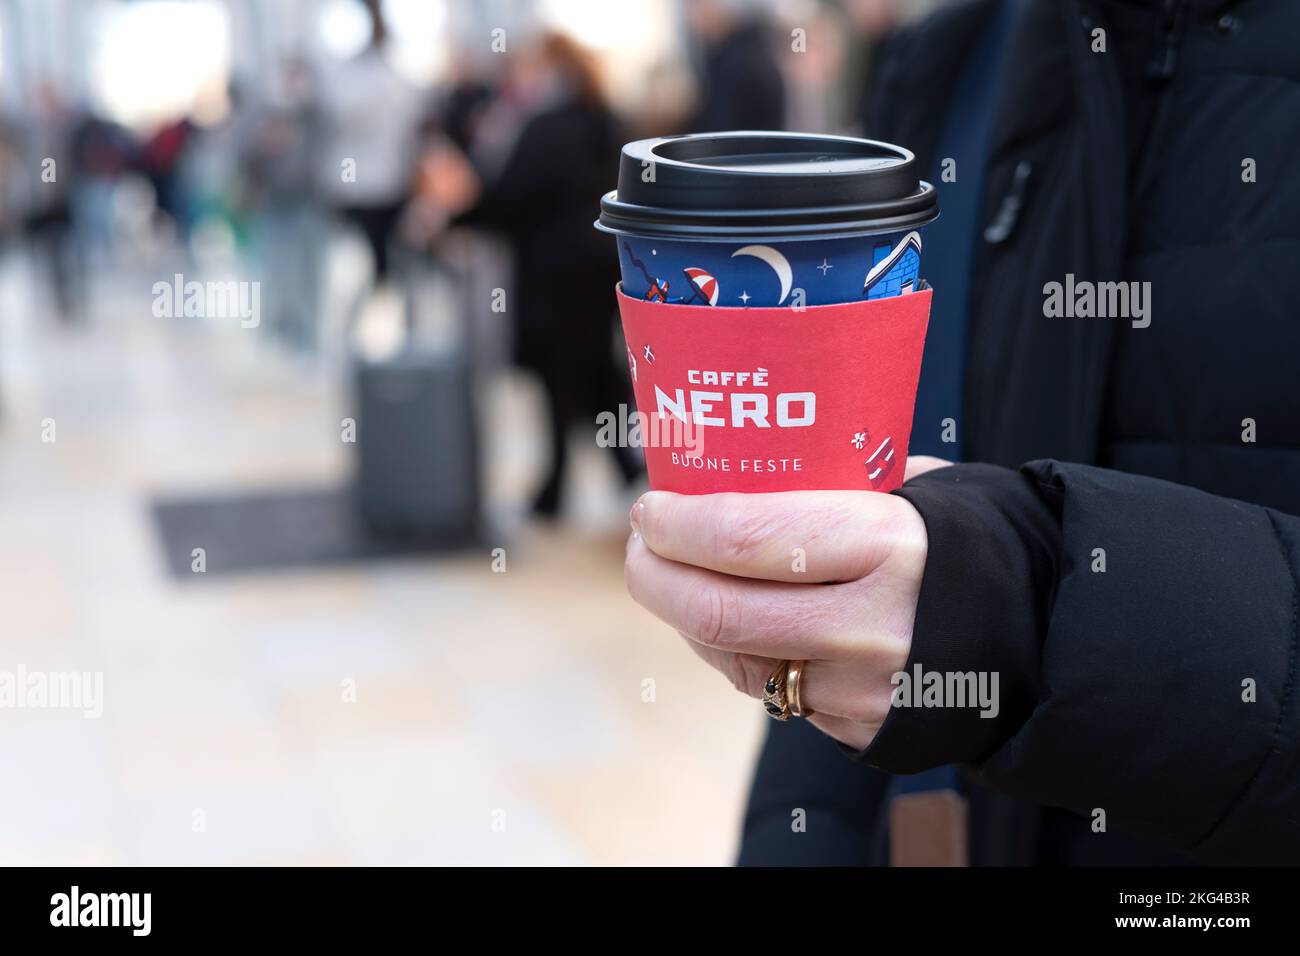 Una mujer sosteniendo una taza festiva de café para llevar de nero caffe. La taza de cartón tiene un mensaje festivo en italiano y muestra el logotipo de la marca Cafe Nero Foto de stock